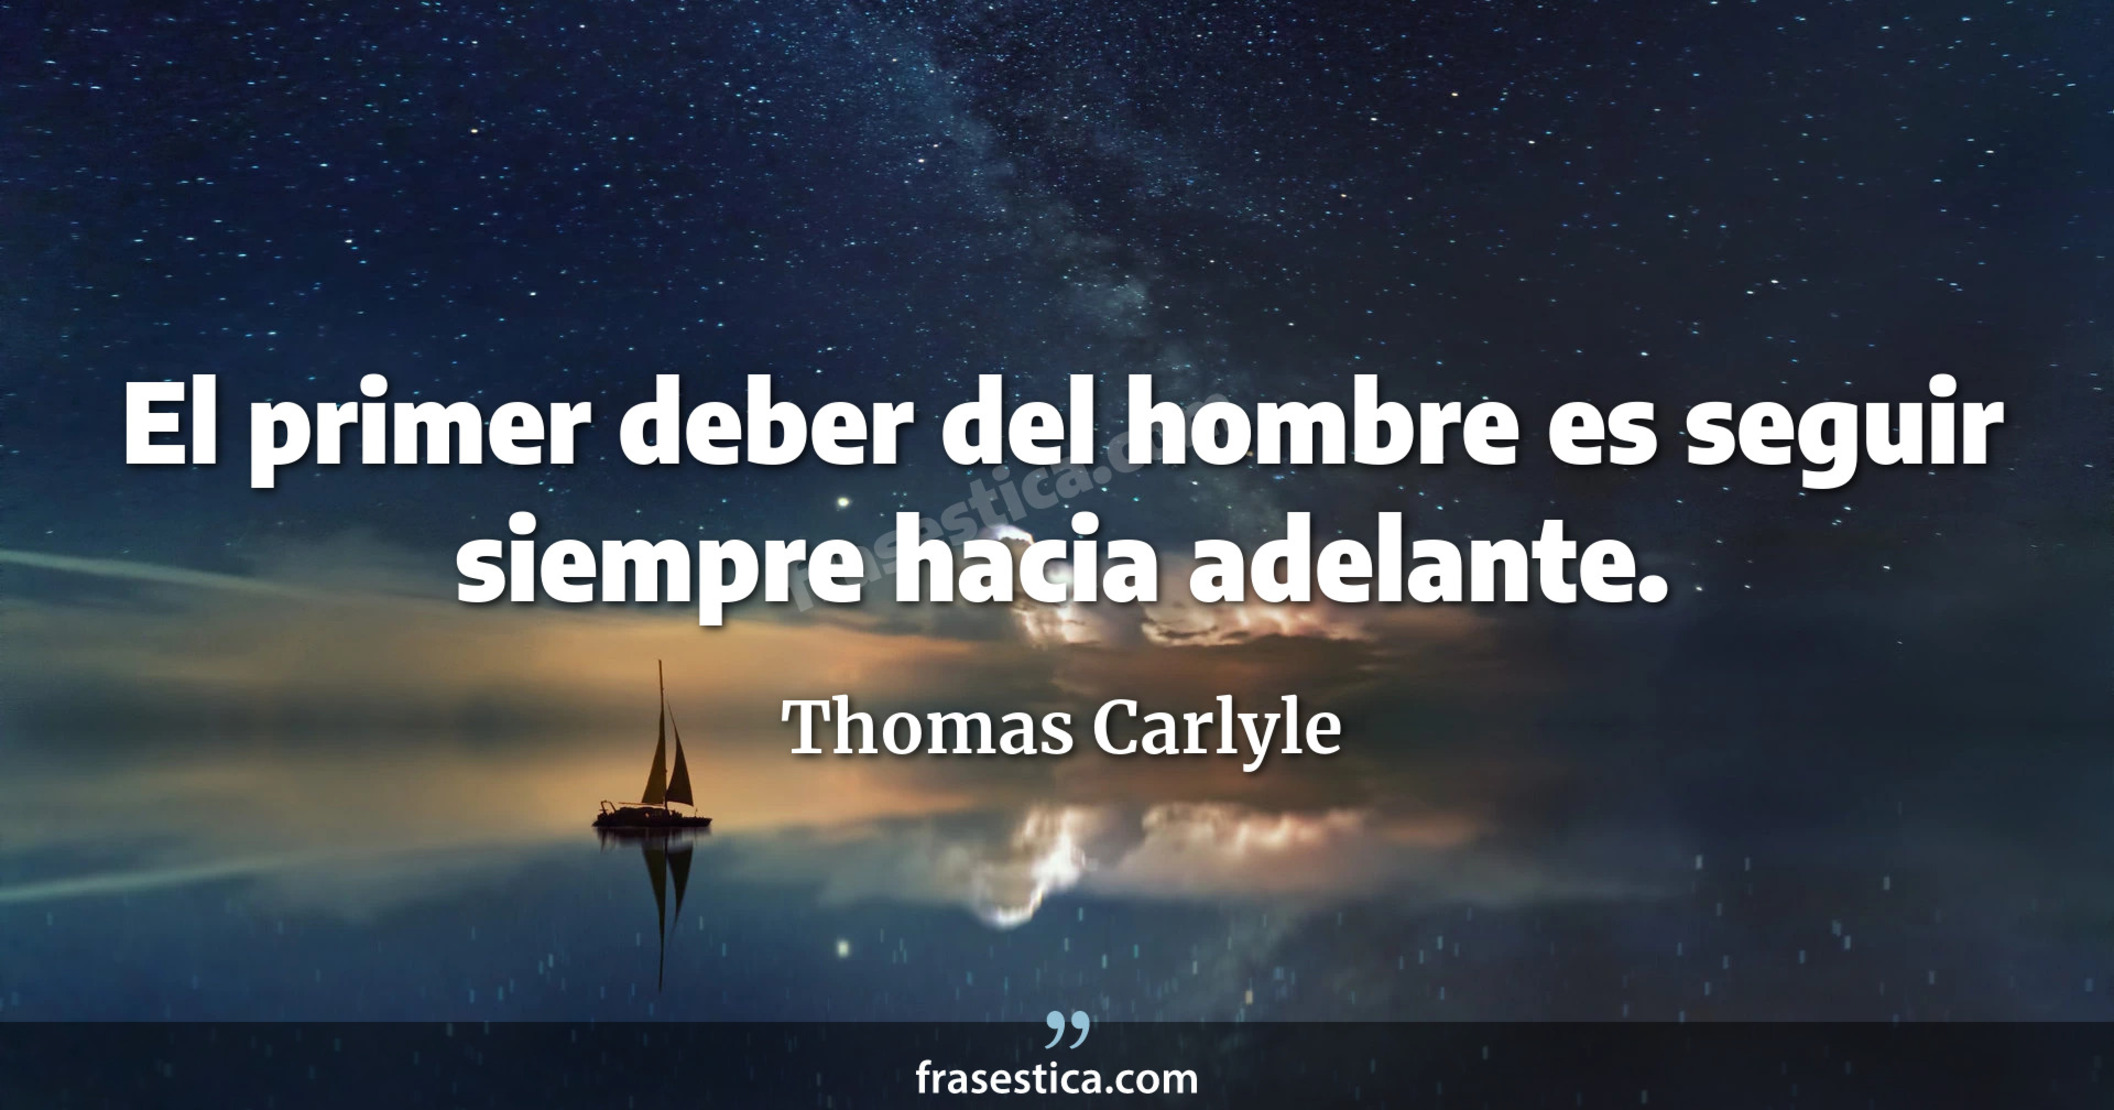 El primer deber del hombre es seguir siempre hacia adelante. - Thomas Carlyle